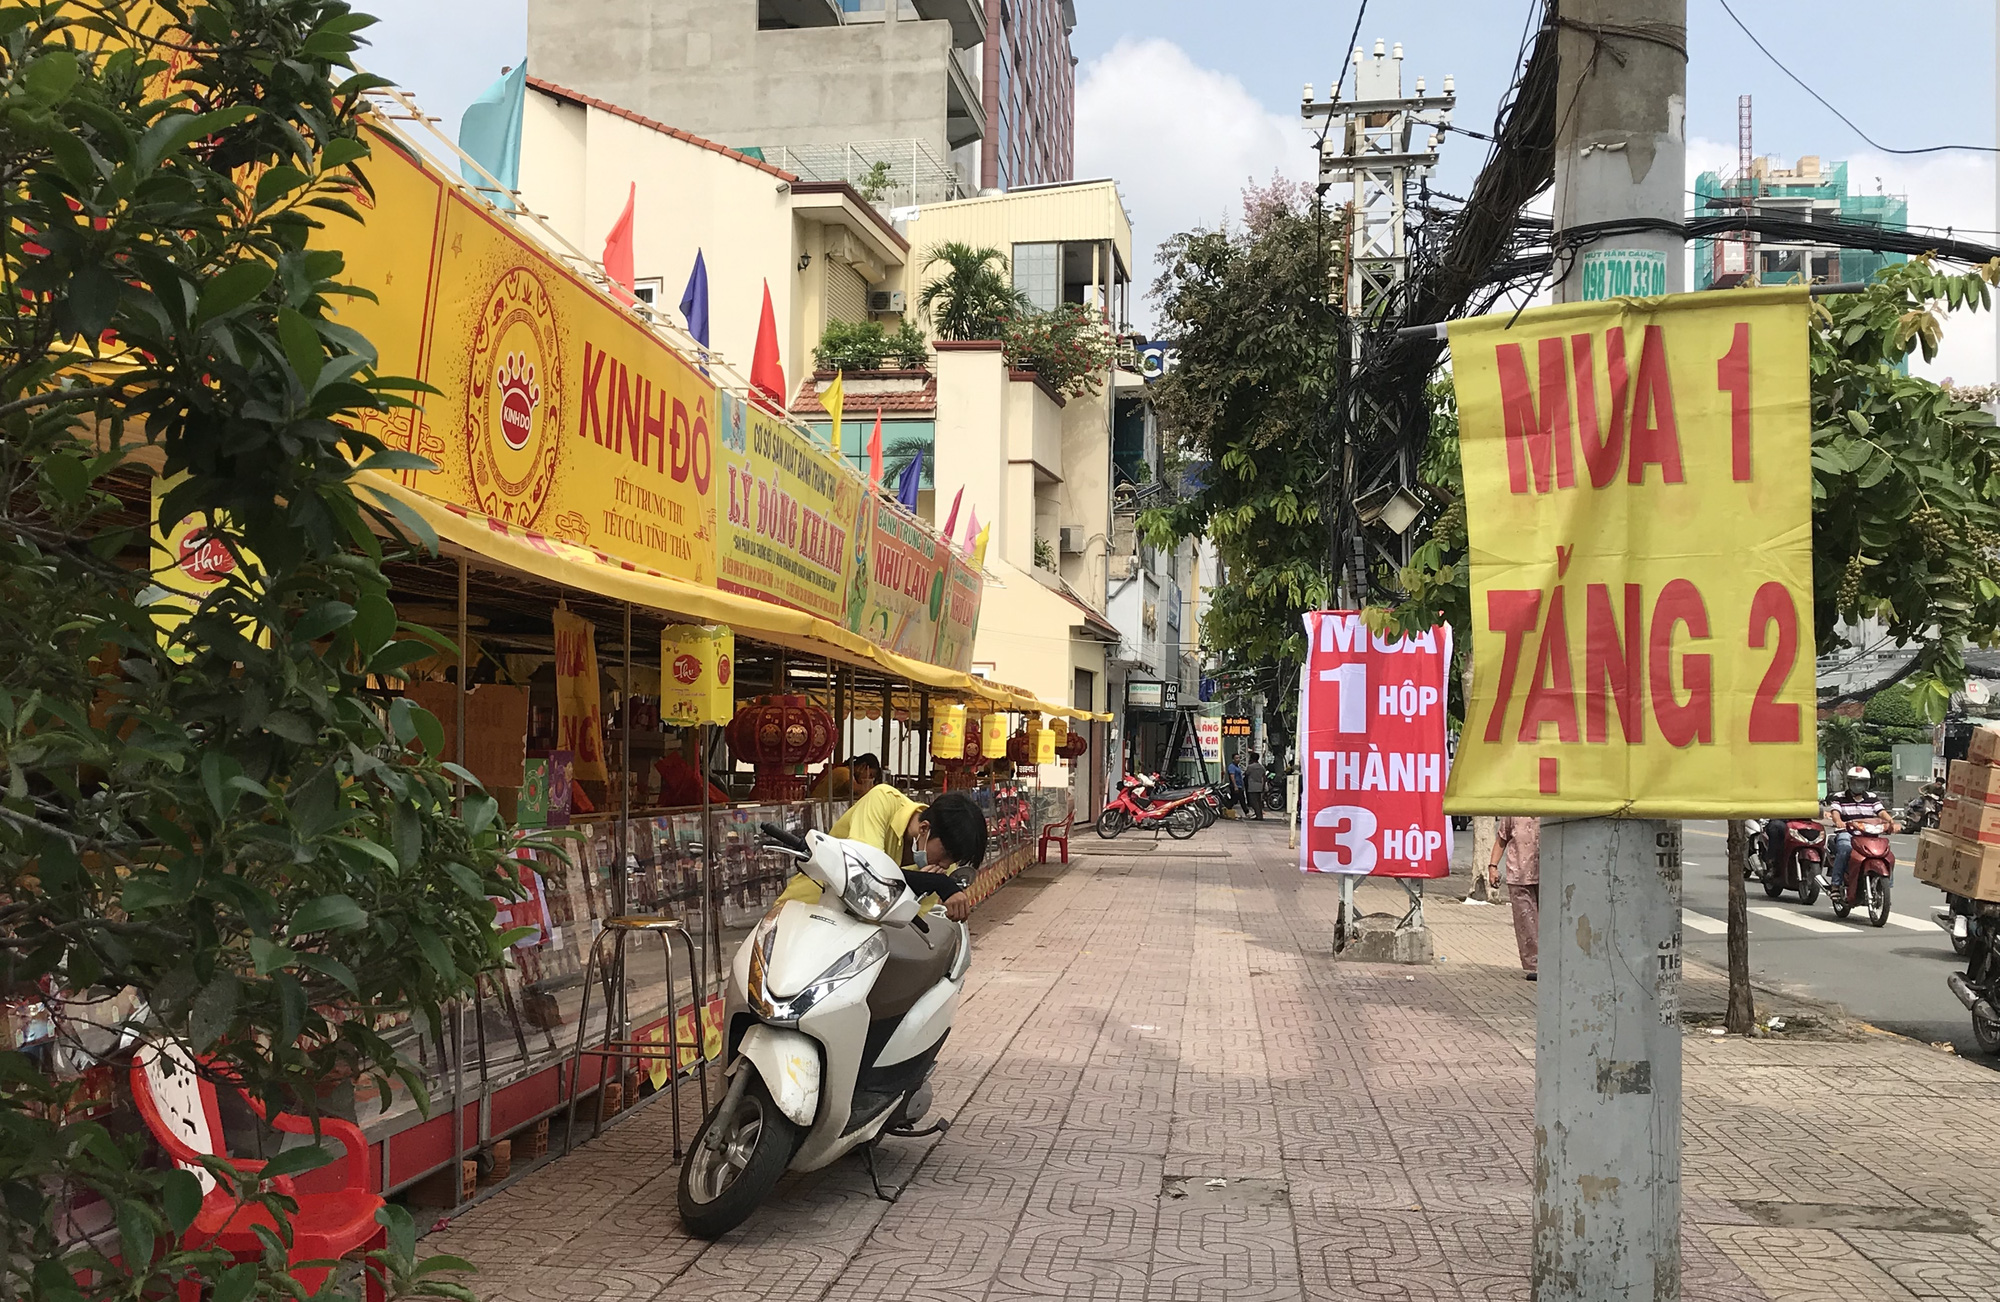 Thực hư bánh Trung thu "mua 1 thành 3", "mua 1 thành 4" đầy đường Sài Gòn - Ảnh 1.